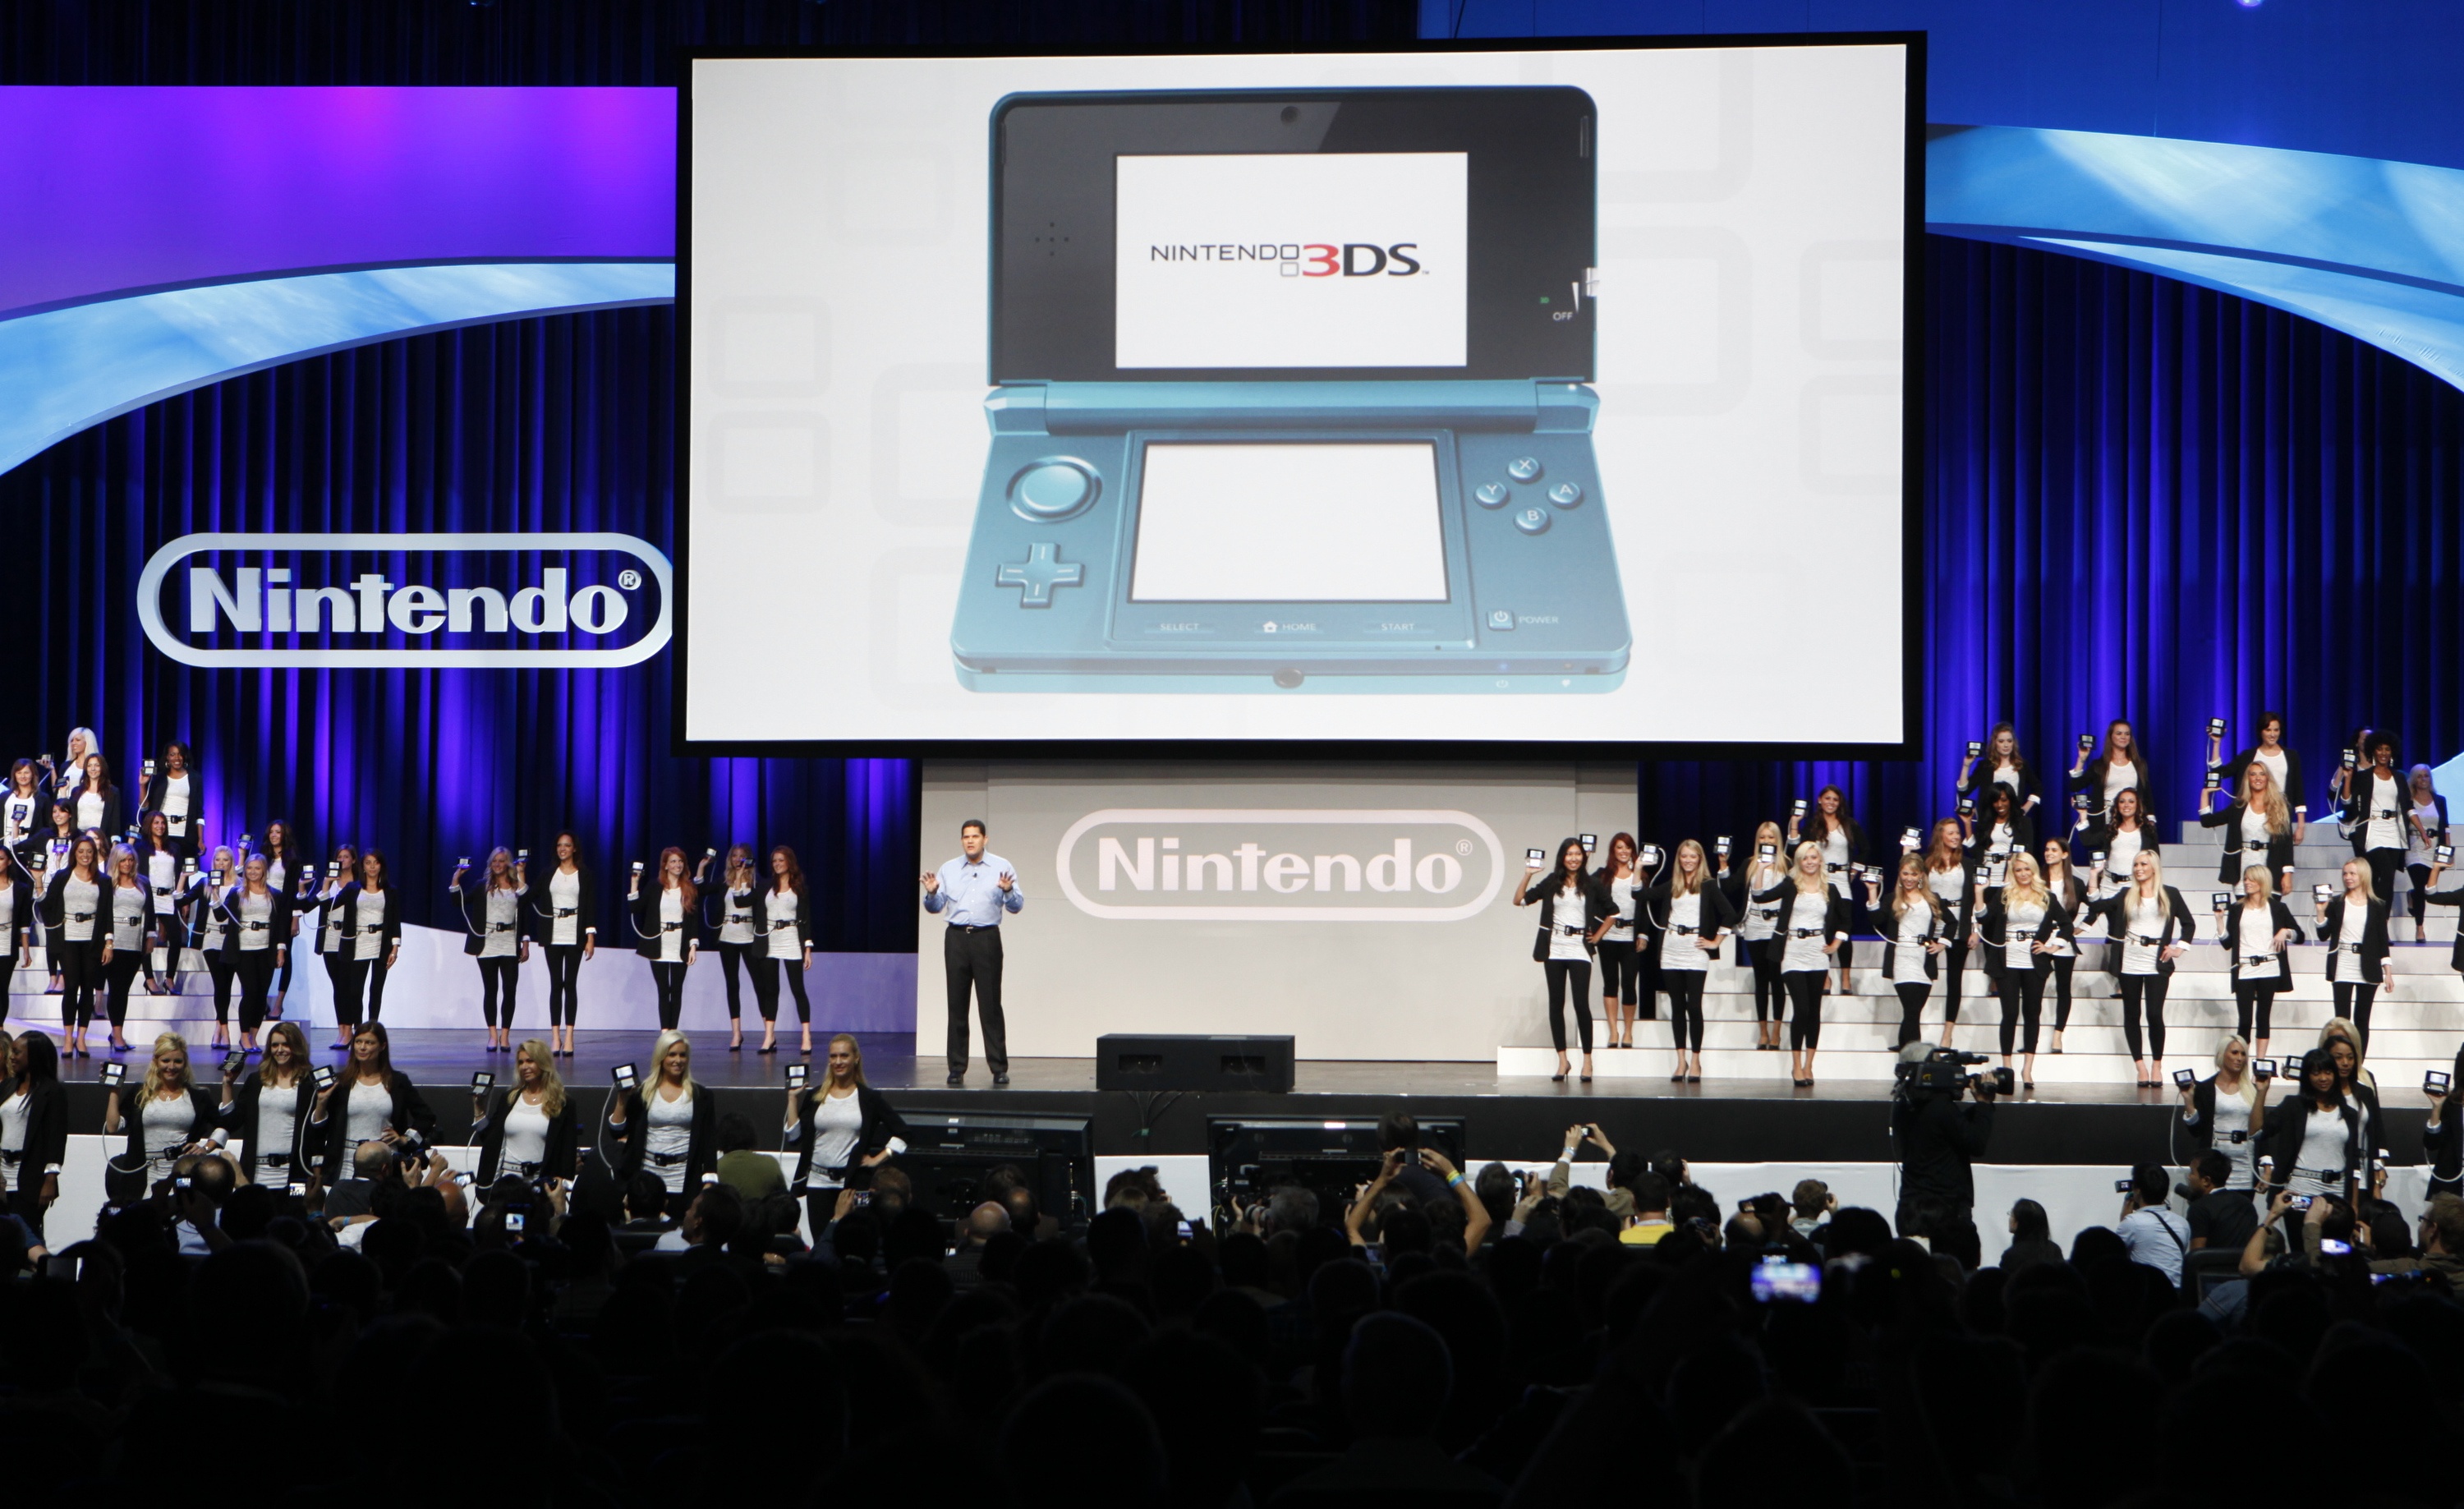 Här visar Nintendo upp sitt nya triumfkort - 3DS